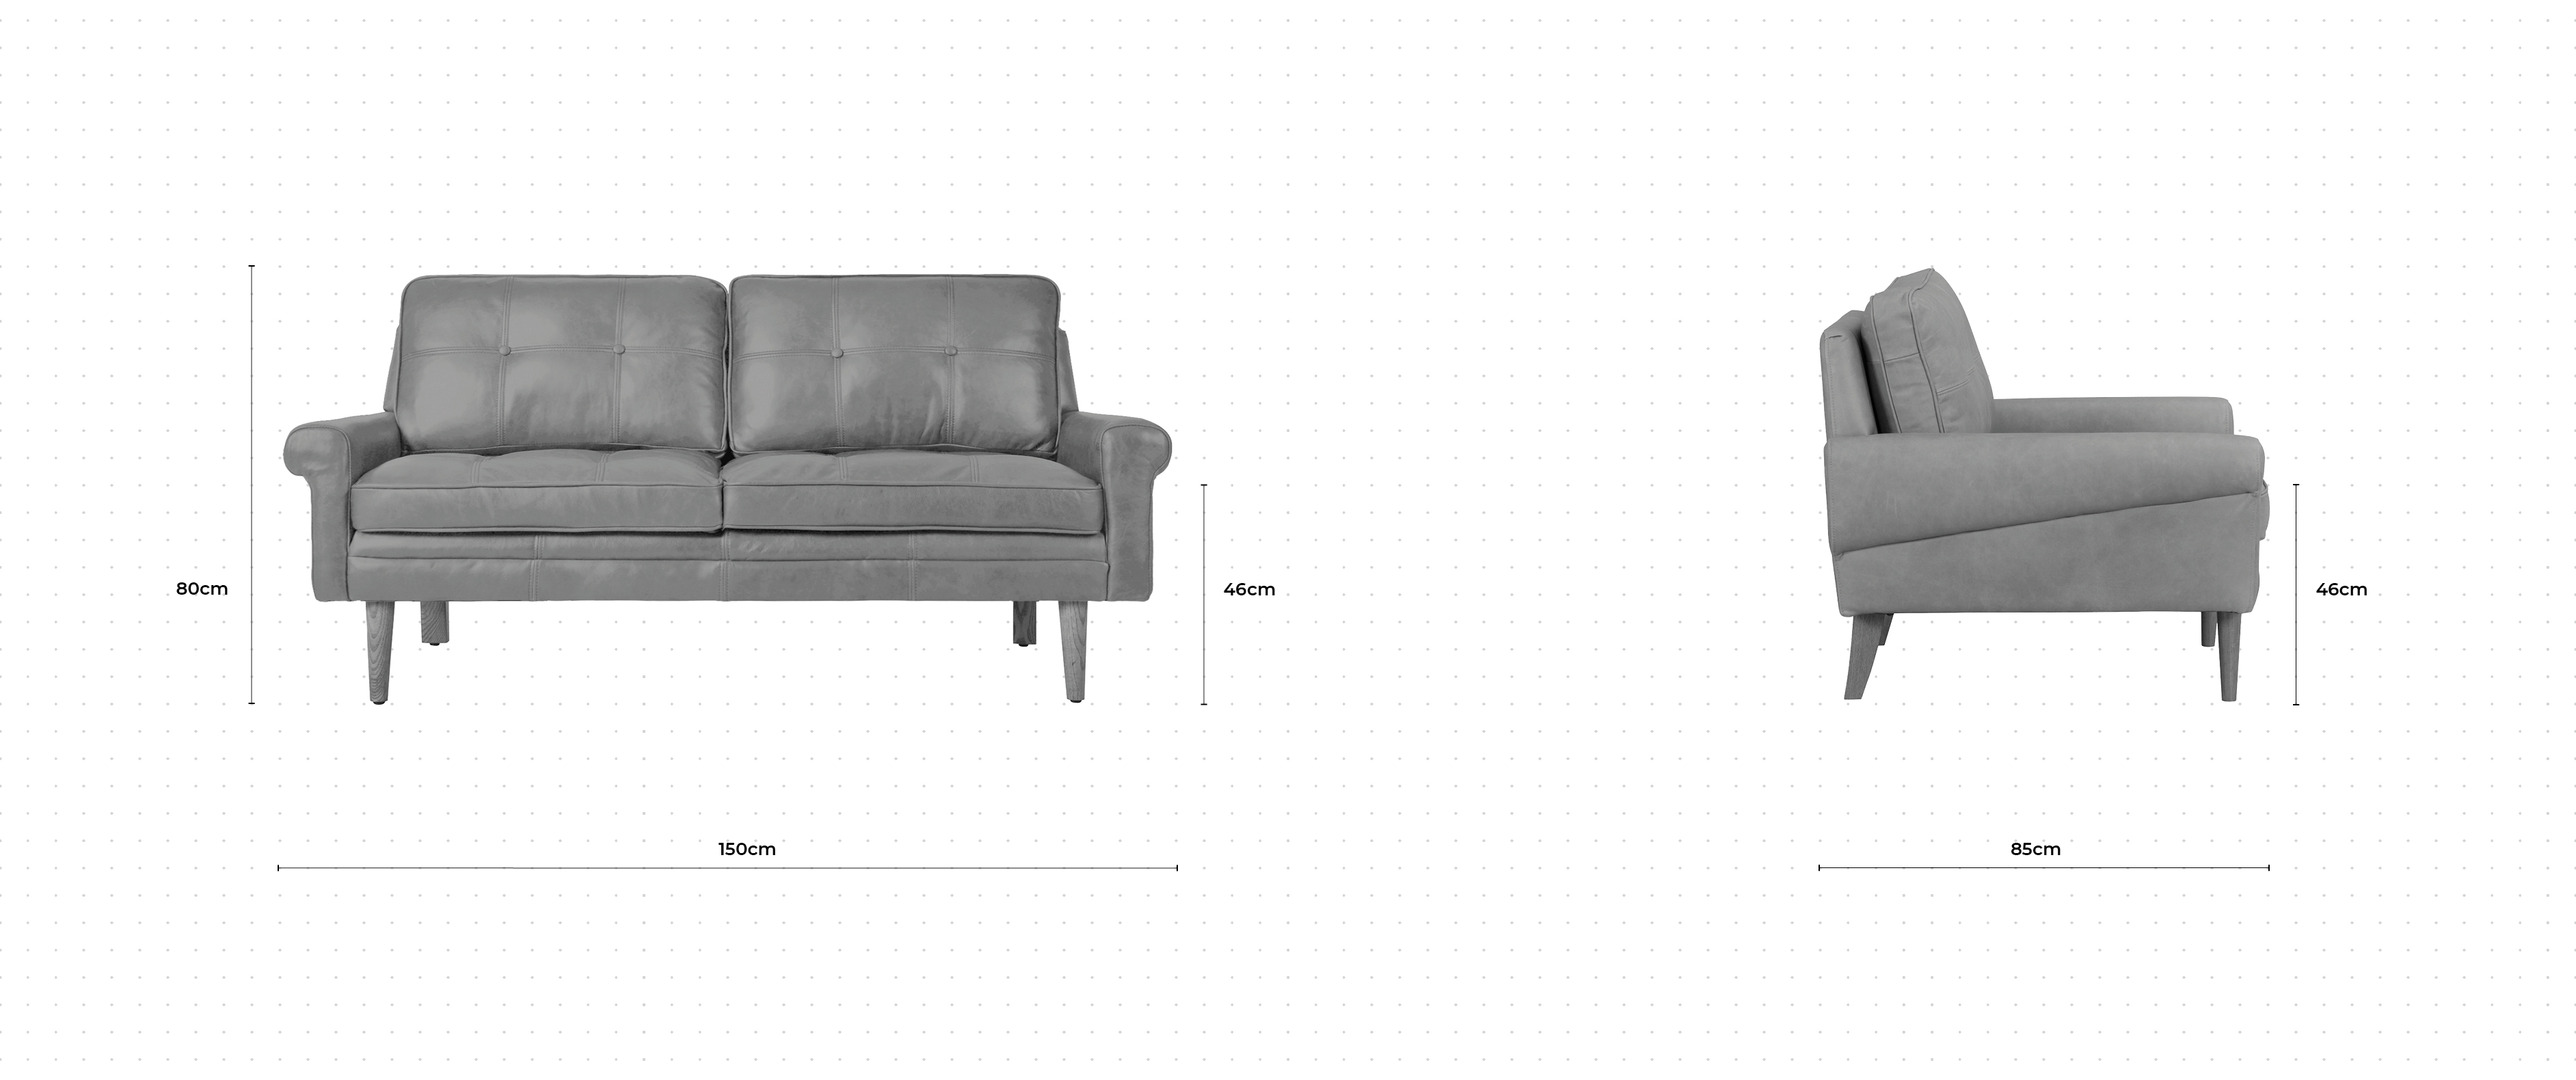 Banks 2 Seater Sofa dimensions